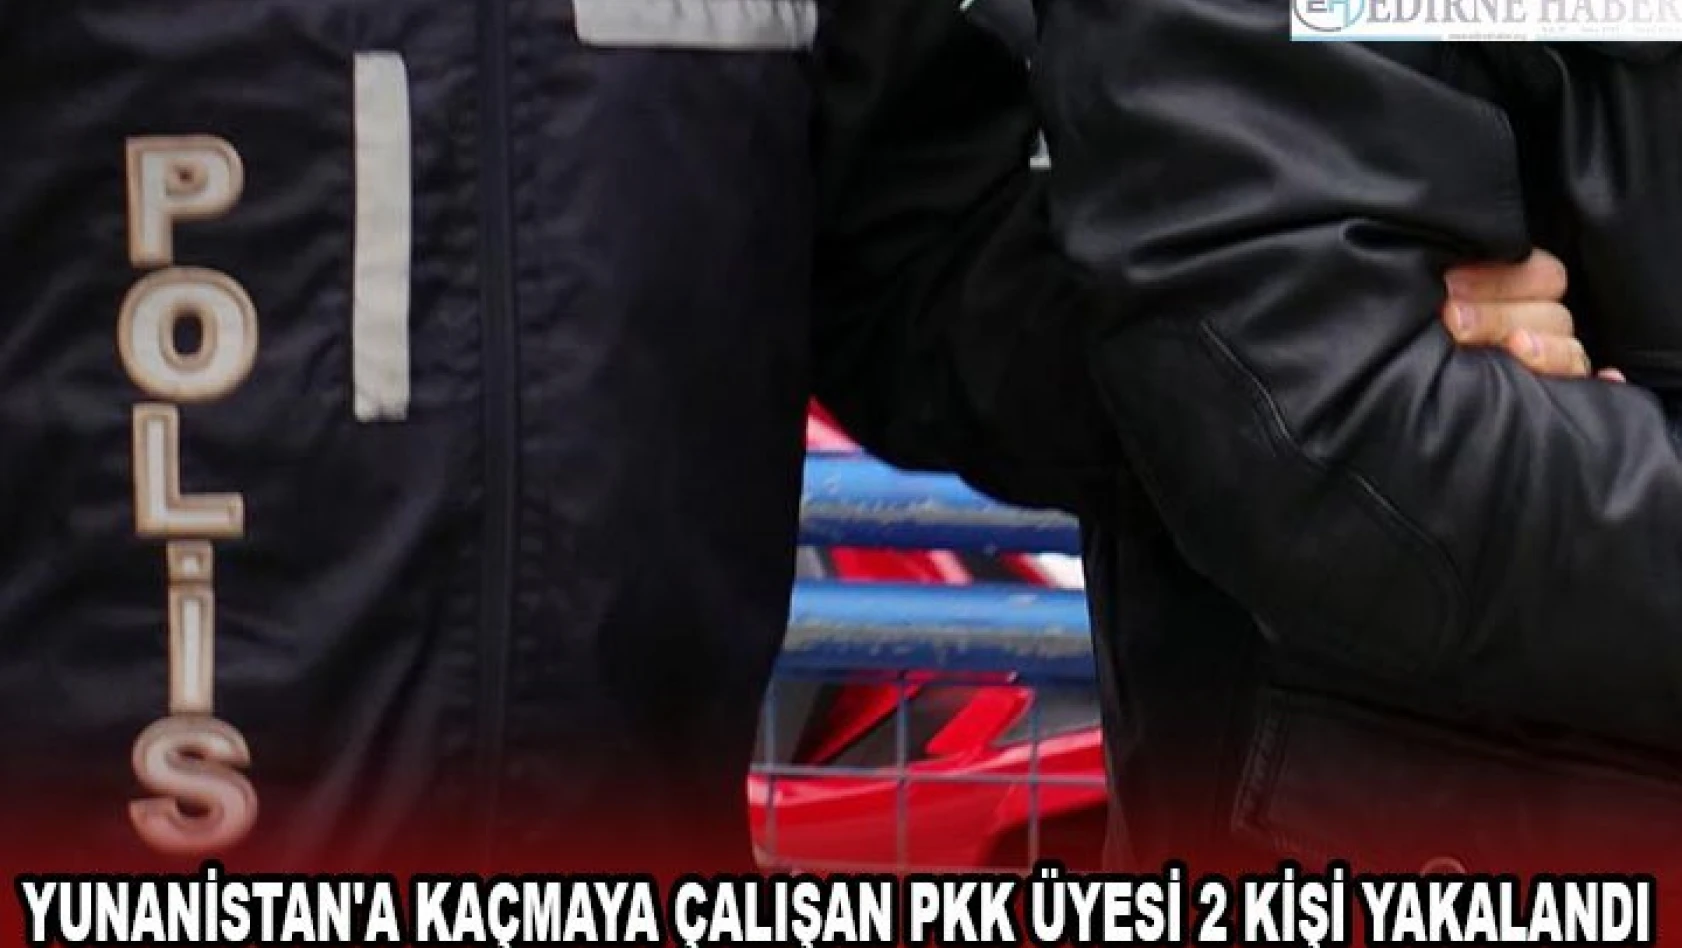 Yunanistan'a kaçmaya çalışan PKK üyesi 2 kişi yakalandı